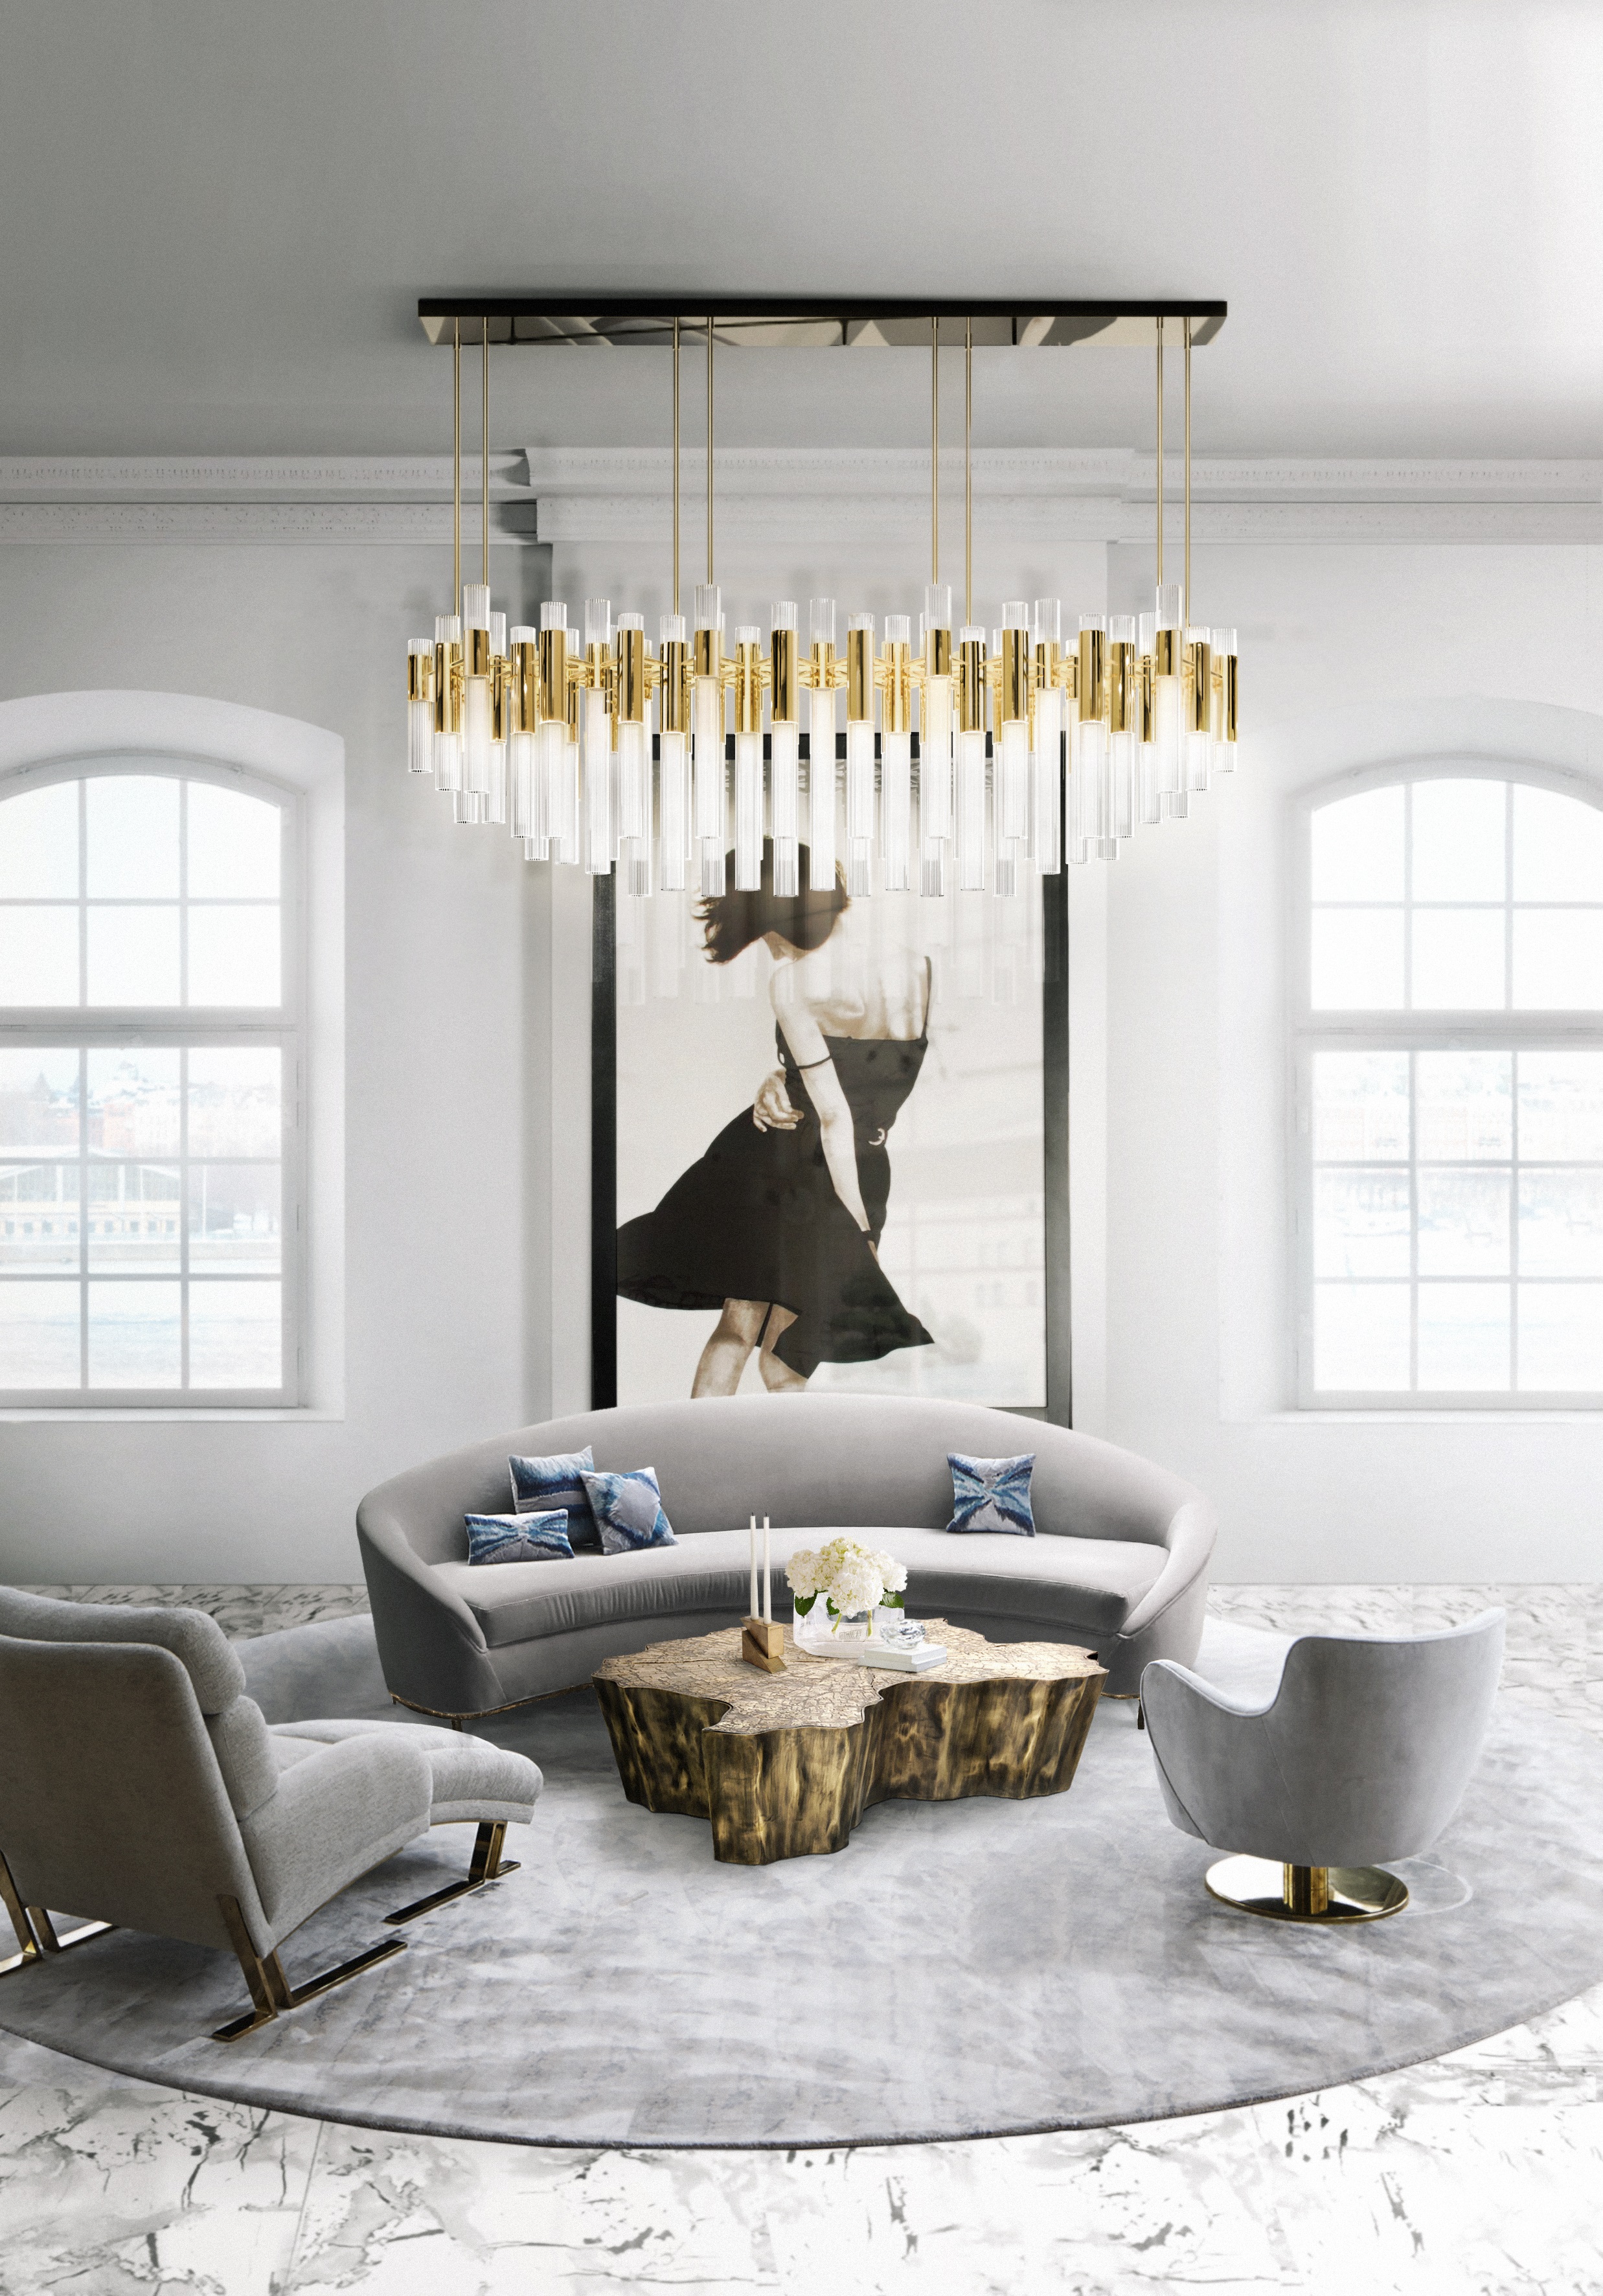 Resultado de imagem para modern lamps for living room